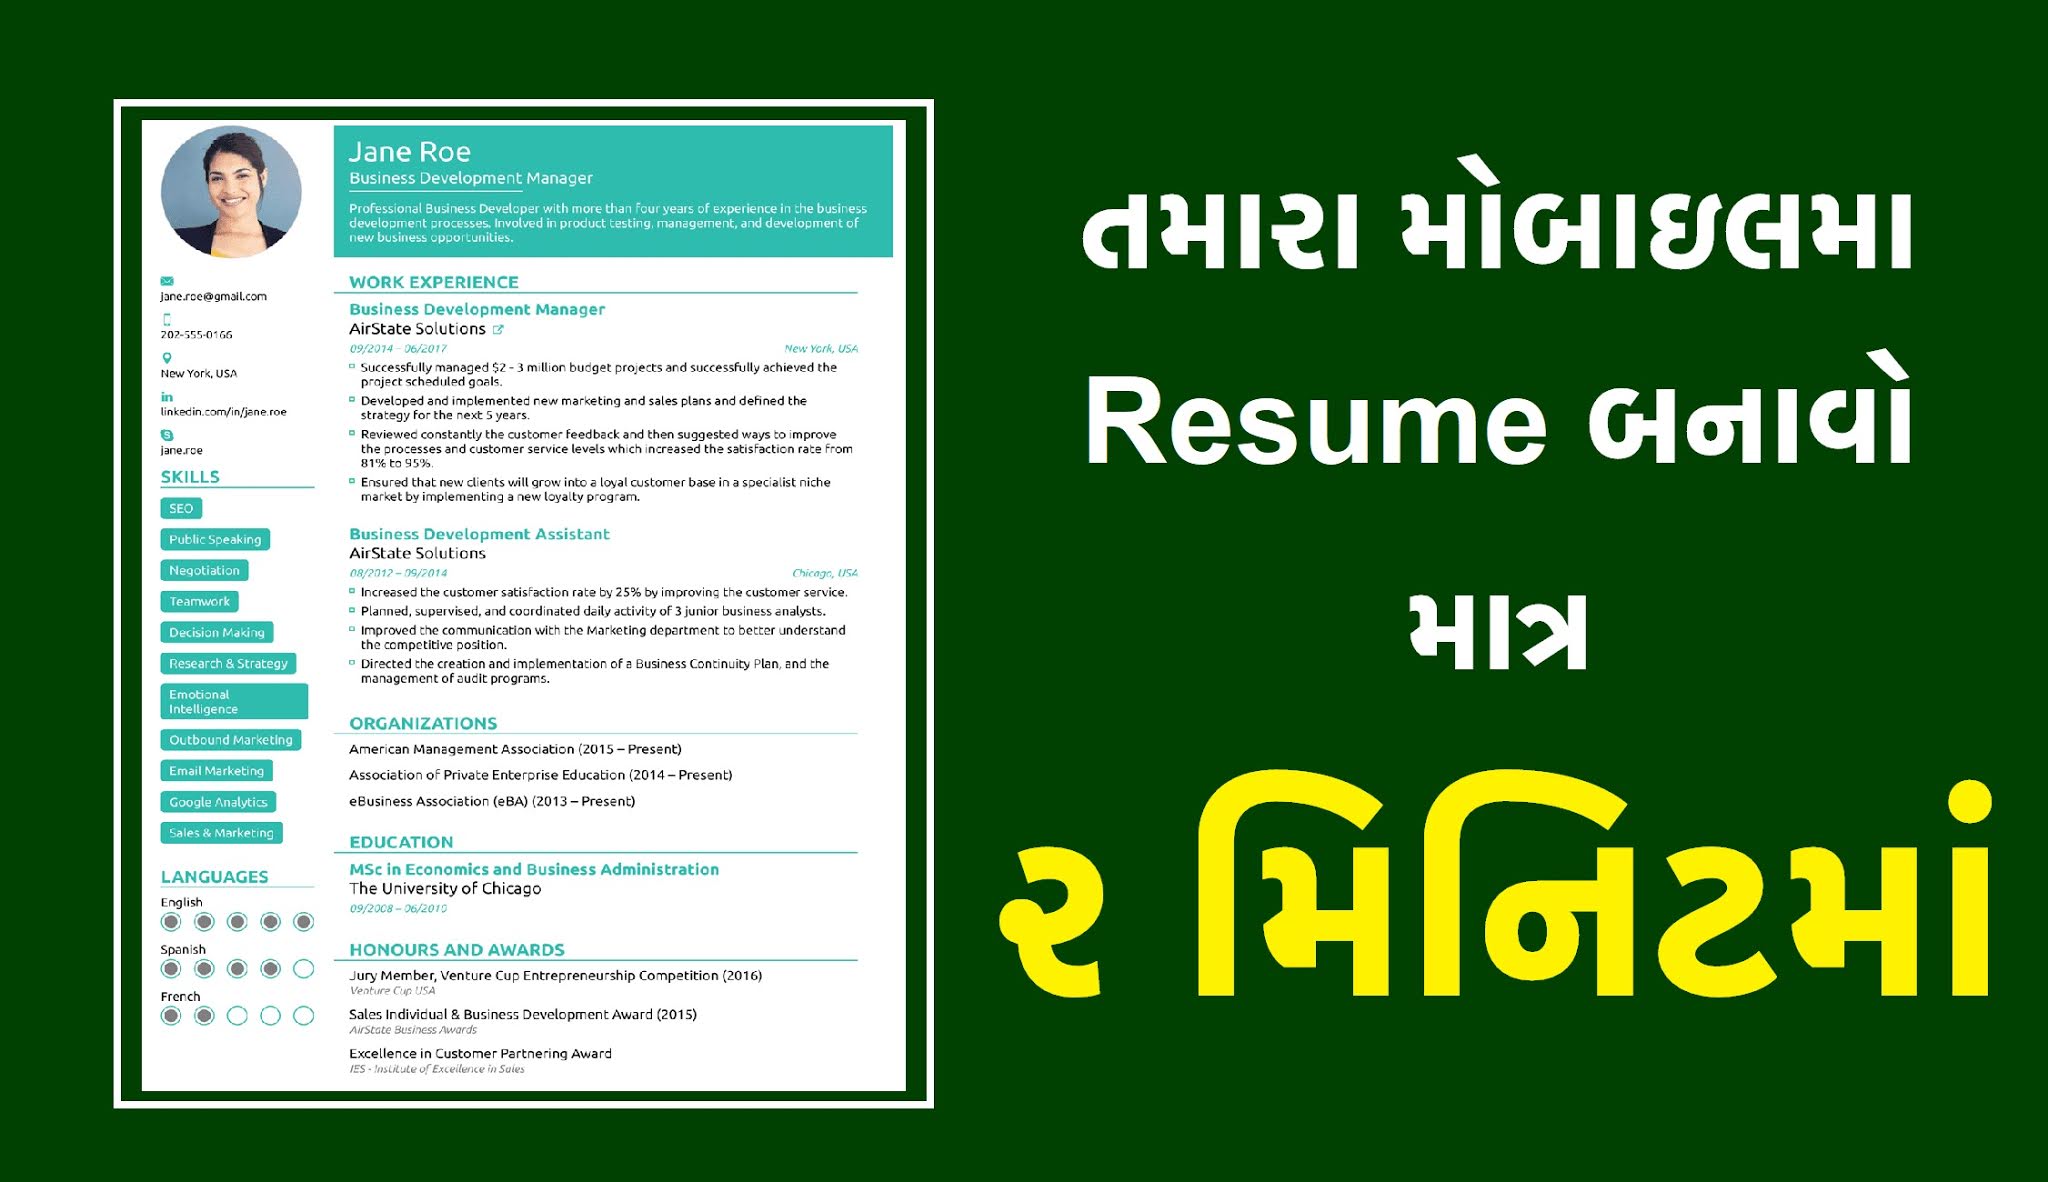 Resume Makar - Make Your Resume Online